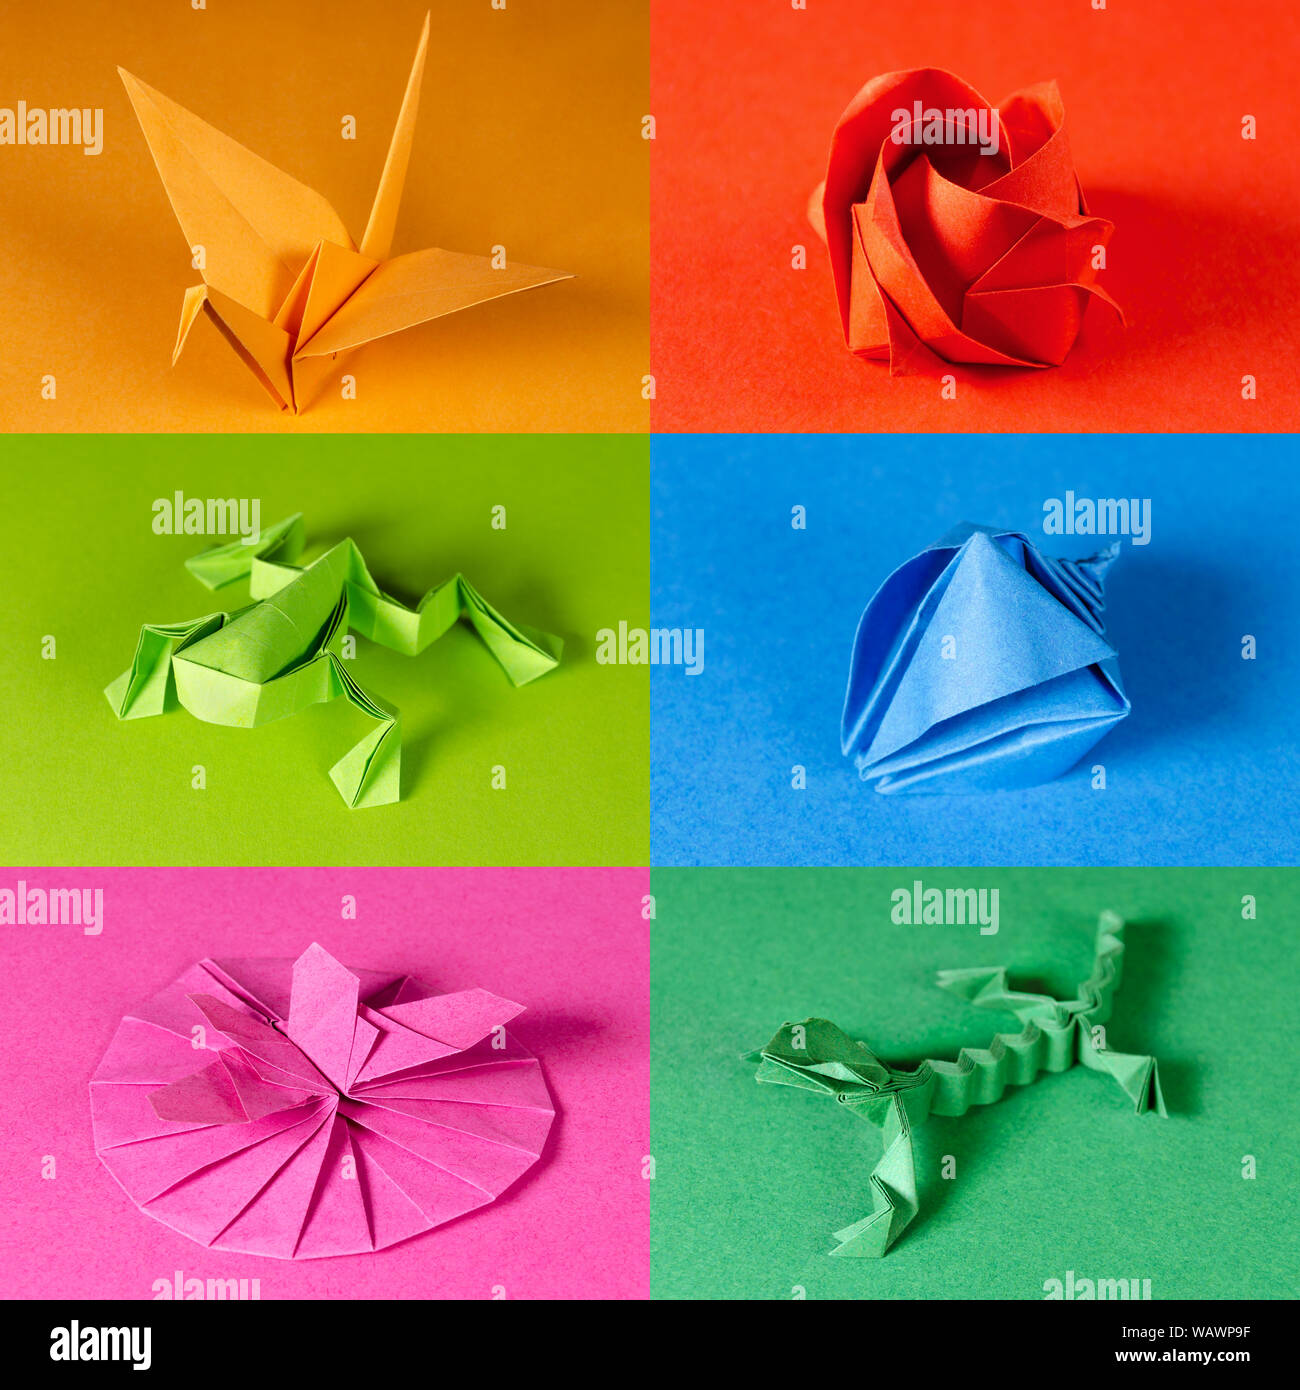 Colorata carta origami figure su sfondi a colori. Gru, rose, rana, conchiglia di mare, a farfalla sul fiore e Lizard. Carta giapponese tecnica di piegatura Foto Stock